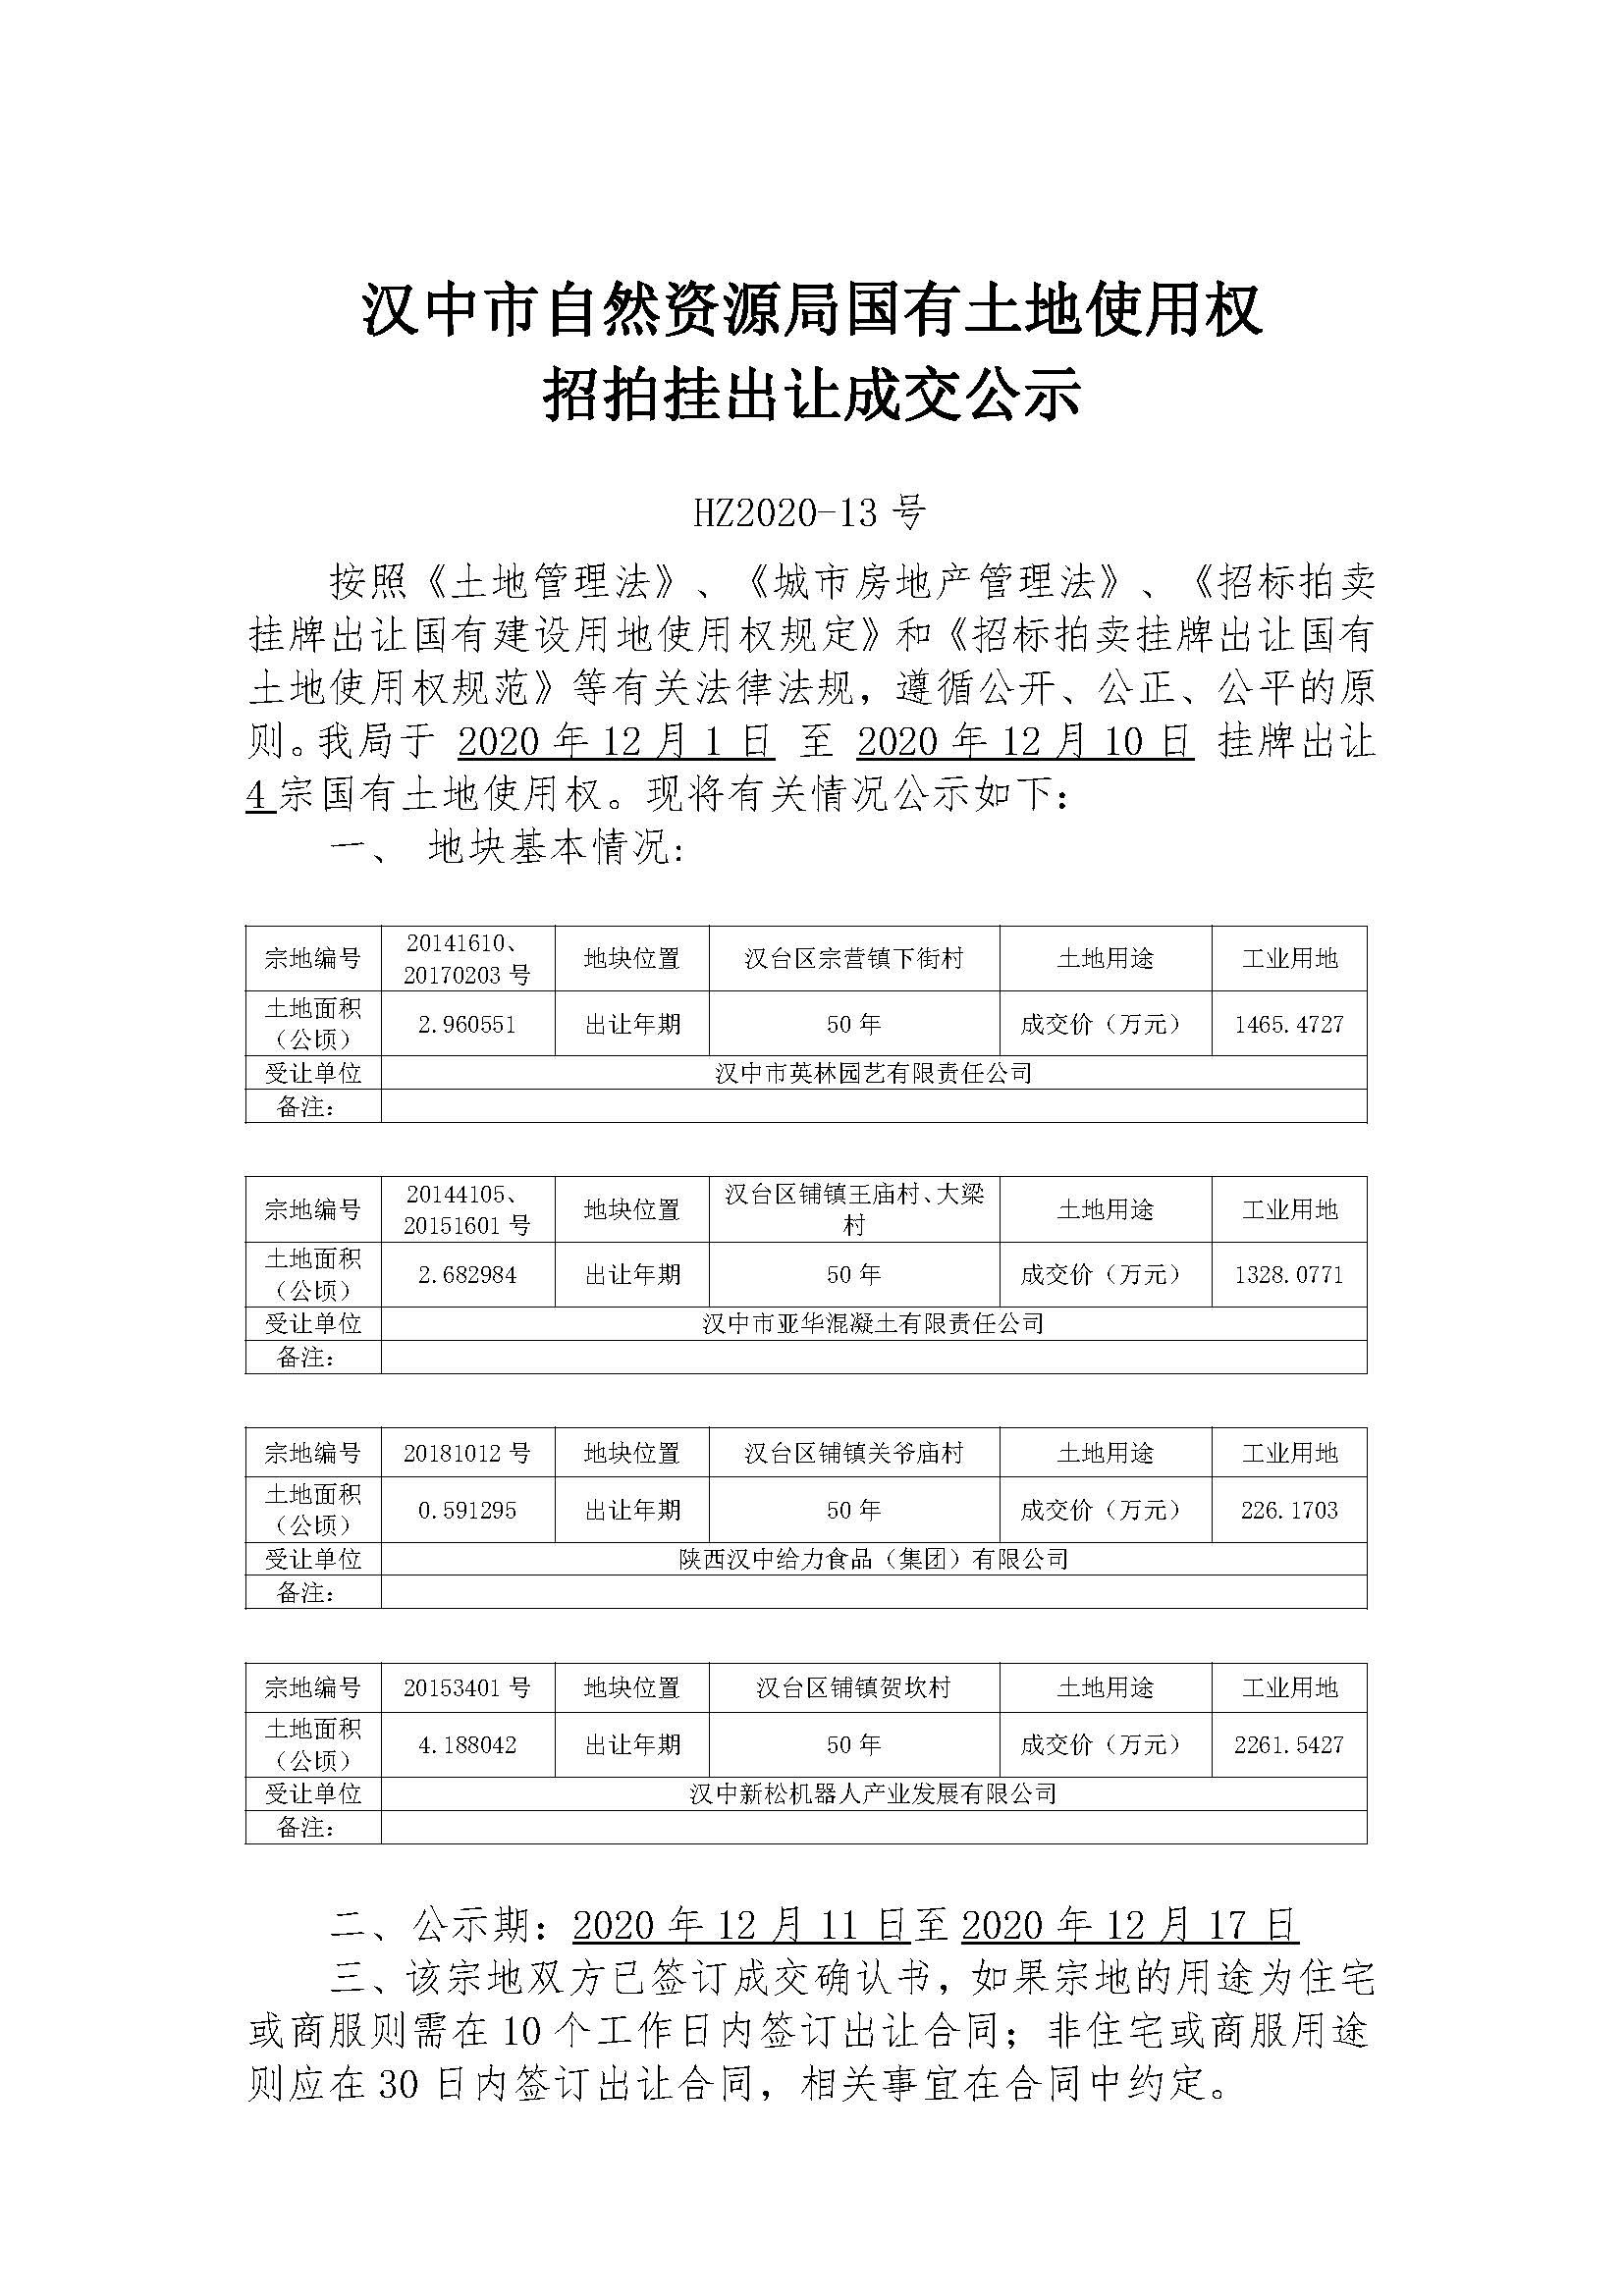 12月10日 汉中市自然资源局国有土地使用权招拍挂出让成交公示